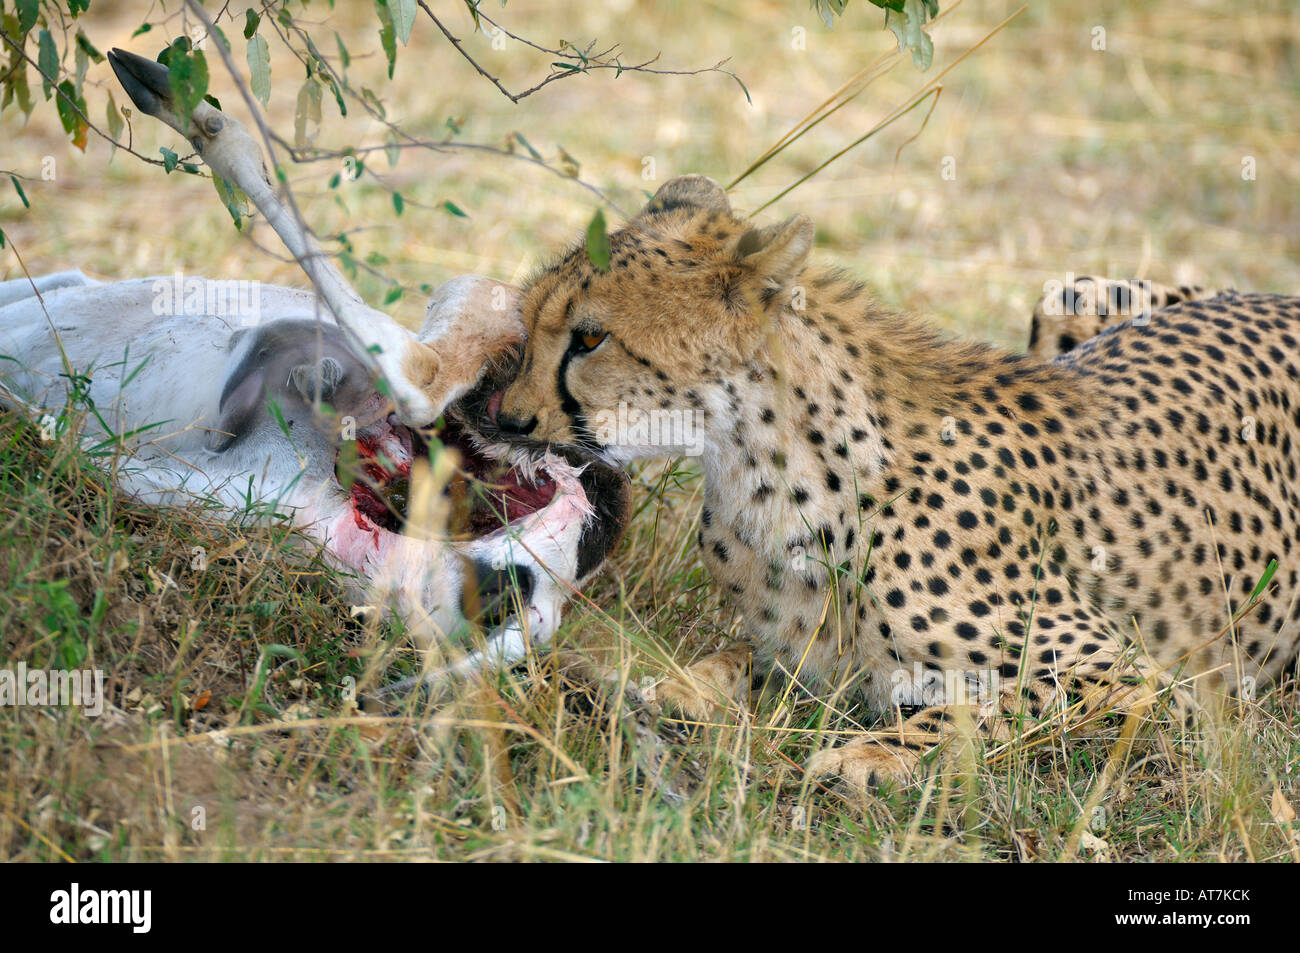 Cheetahs,a Cheetah at a bushbuck kill, Masai Mara, Kenya Stock Photo